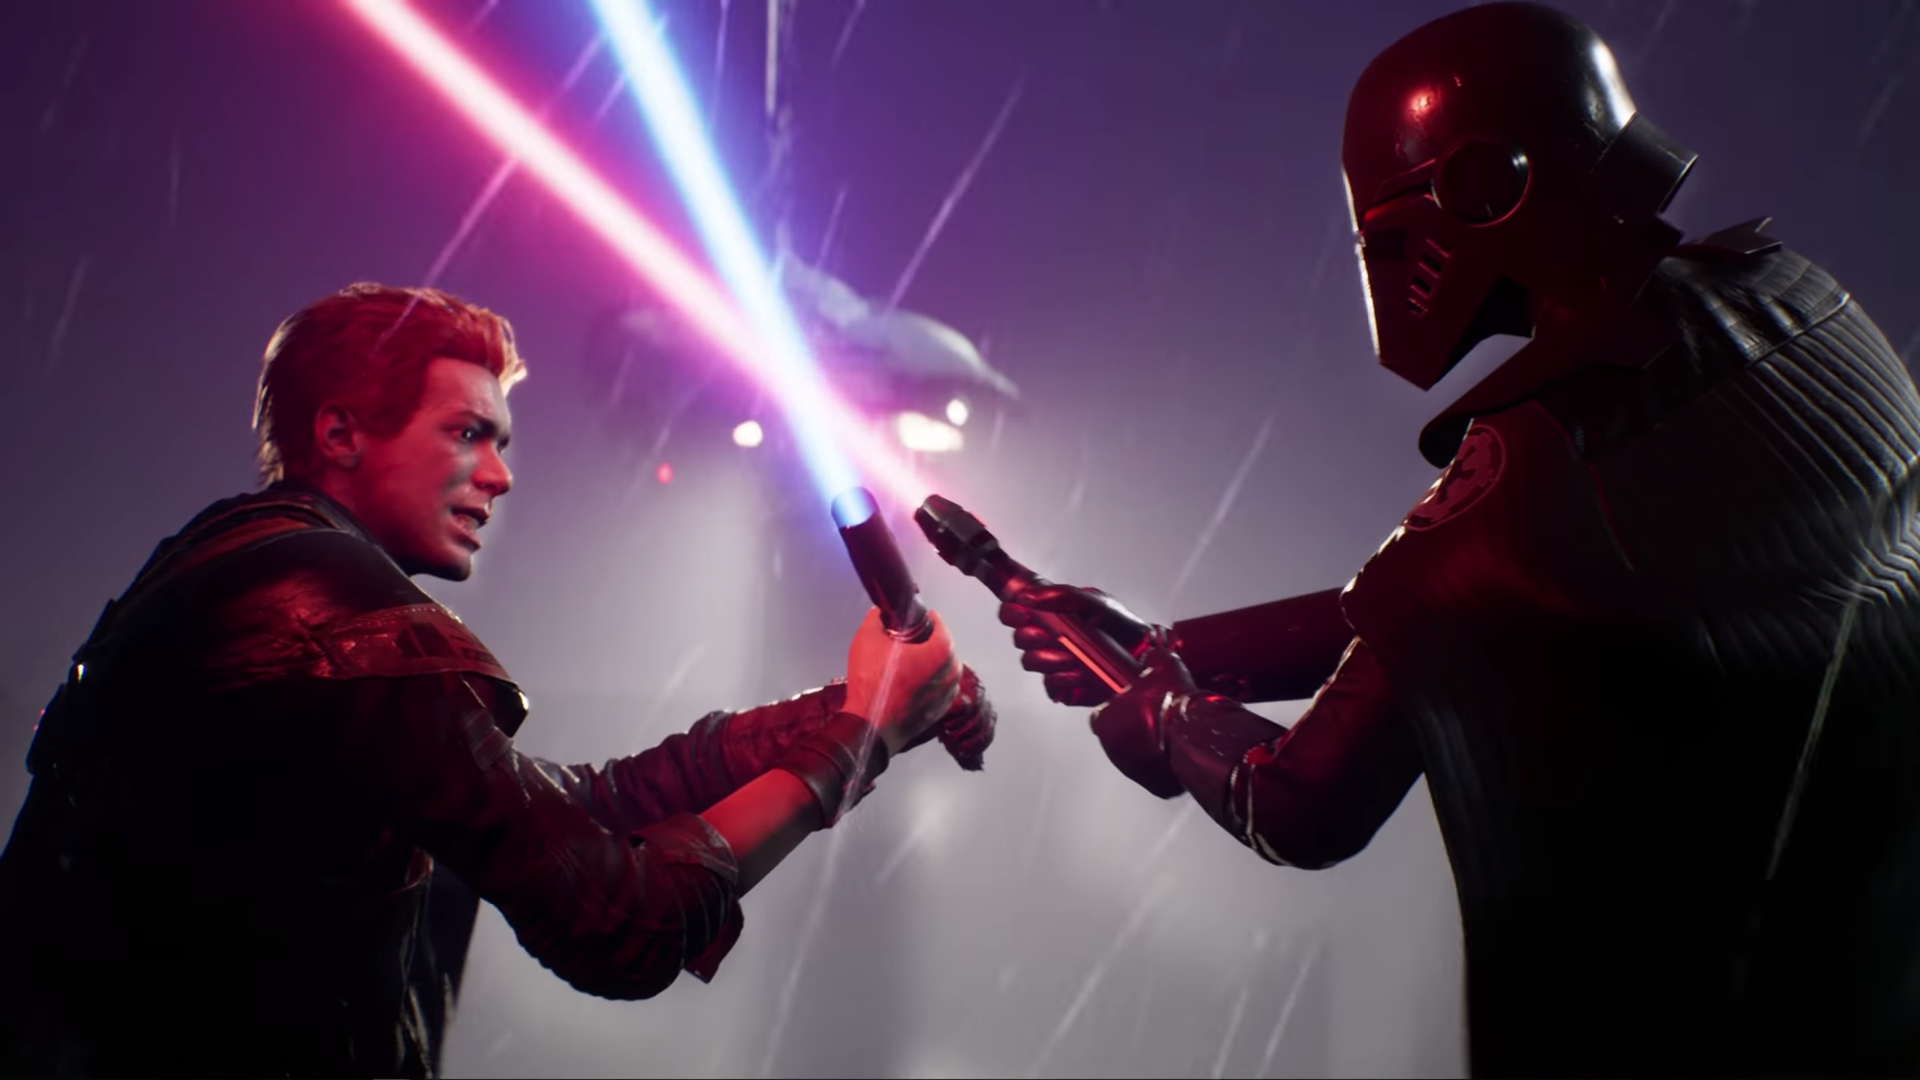 بازی Star Wars Jedi: Fallen Order فایل سیوهای PS4 را به کنسول PS5 منتقل می کند